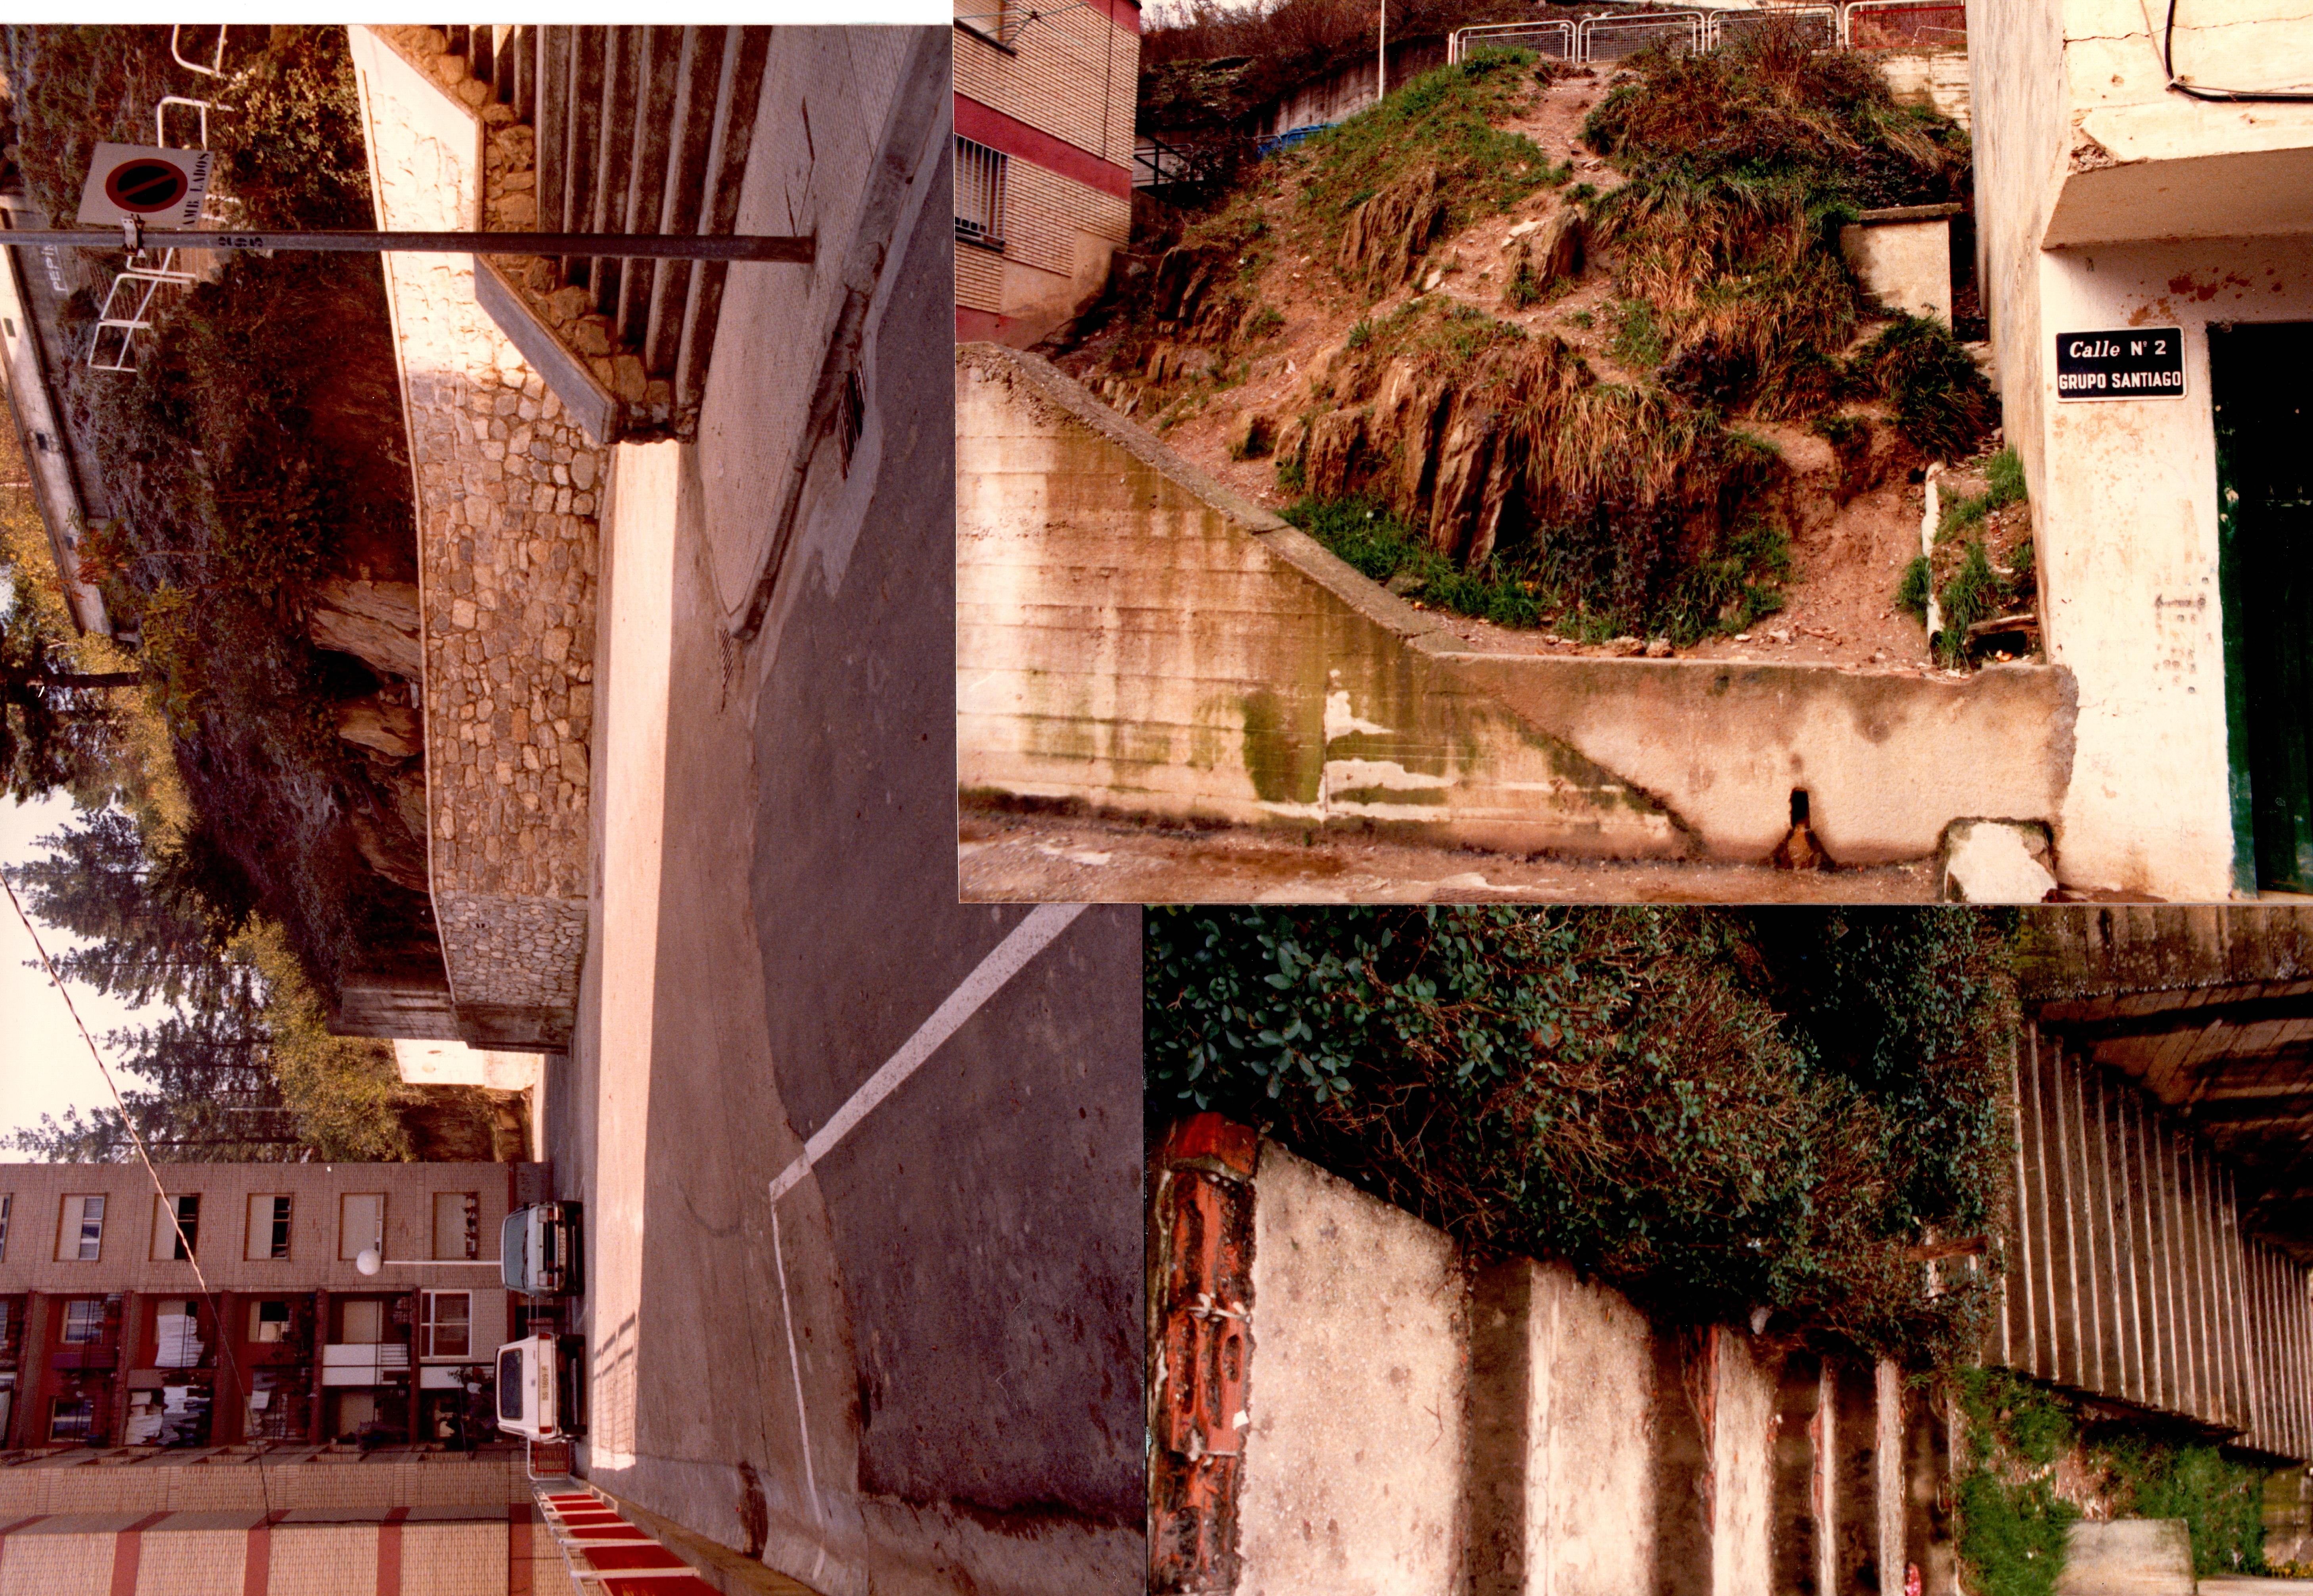 Tres fotografías muestran diferentes etapas de la situación de un entorno de un barrio de Ermua. En dos de ellas se ven unas escaleras y una parcela ascendente llenas de malas hiervas y barro. En cambio, la fotografía de la izquierda muestra la misma zona rehabilitada y adaptada con nuevas escaleras. 